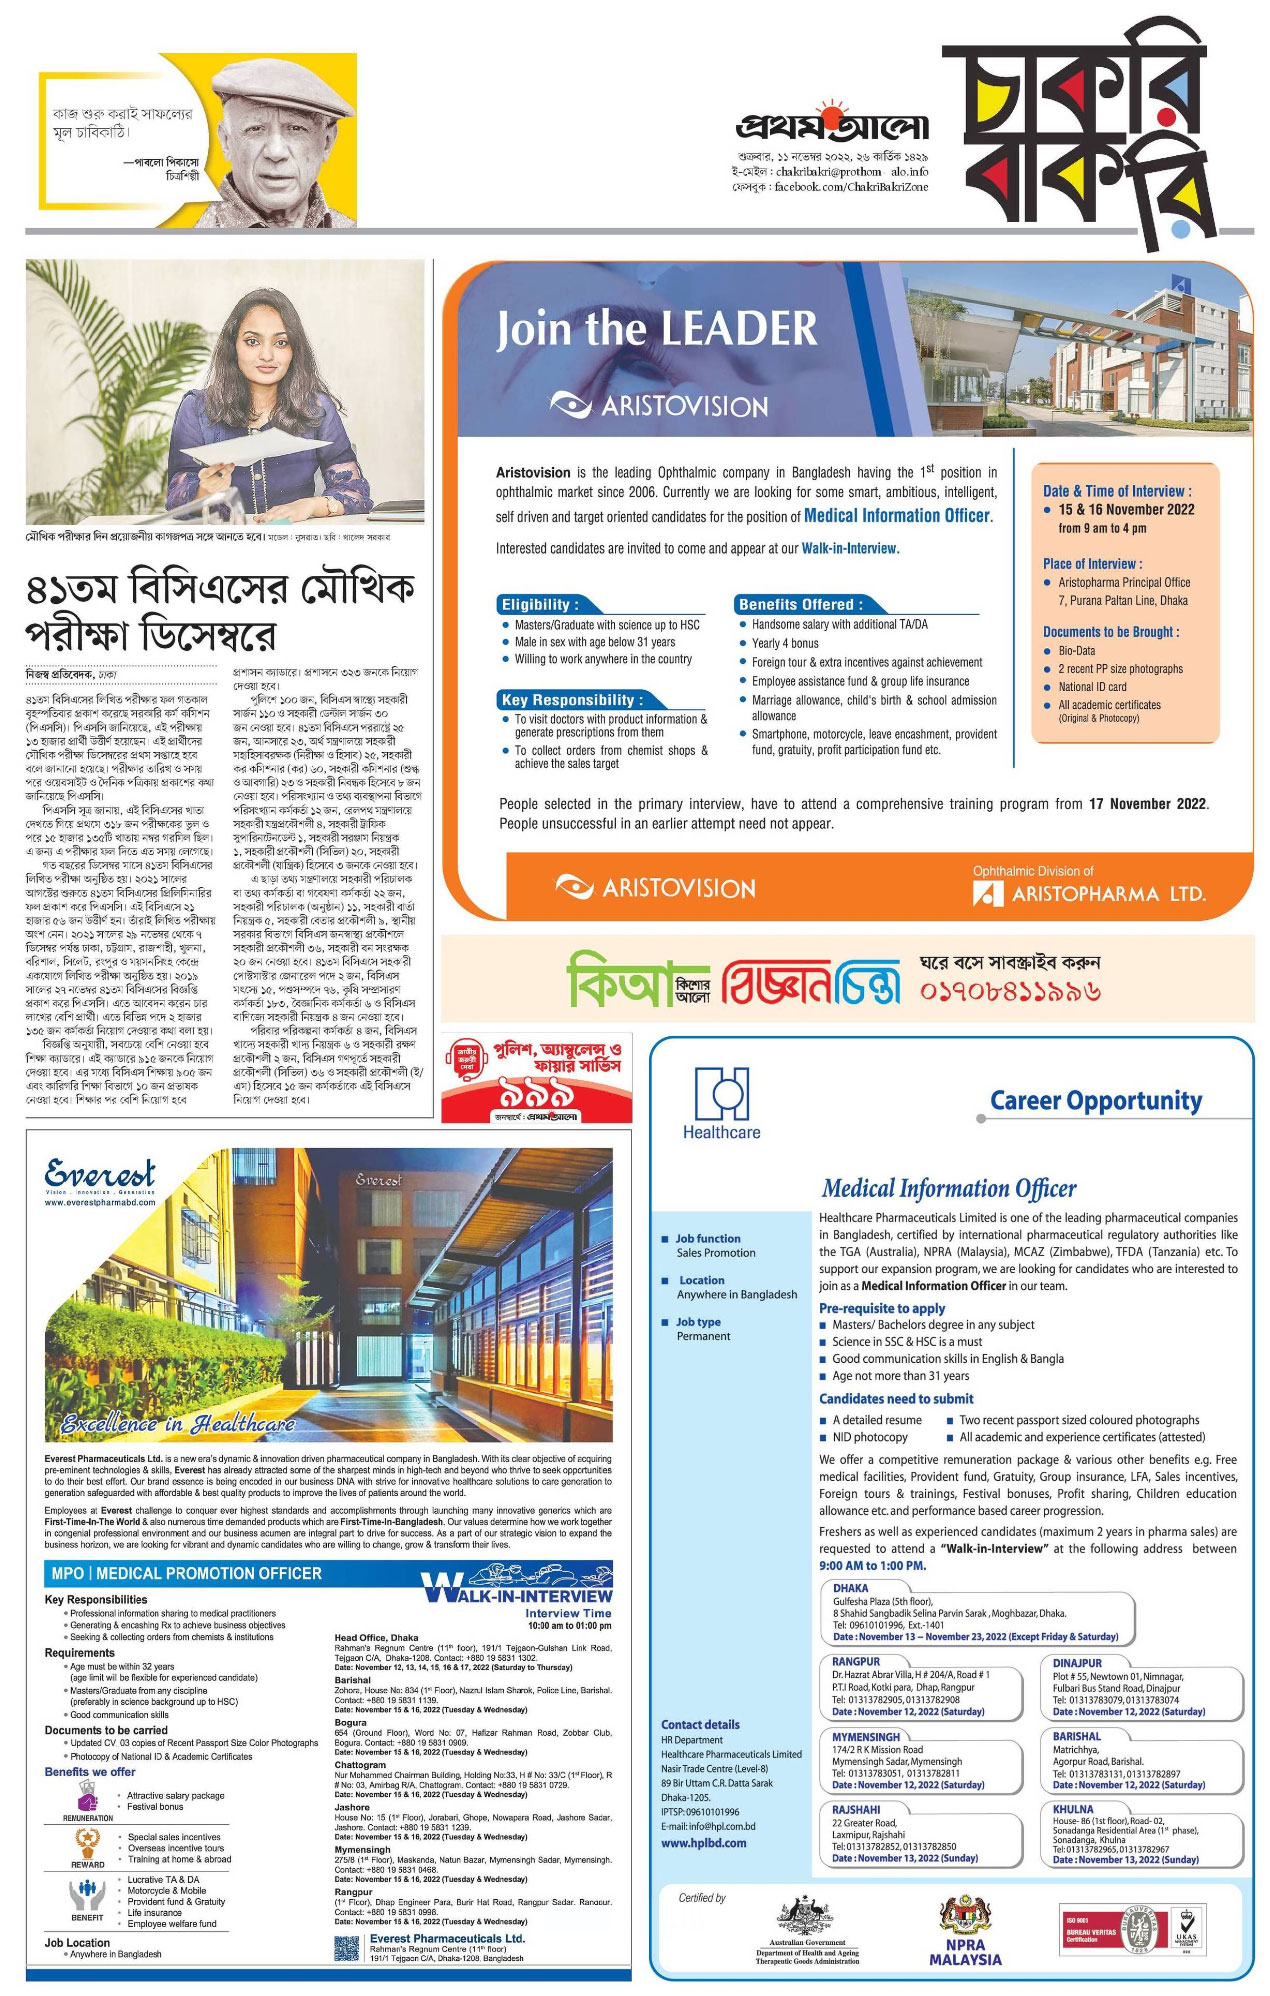 প্রথম আলো চাকরির খবর সাপ্তাহিক চাকরি বাকরি পত্রিকা ১৮ নভেম্বর ২০২২ - 18 November 2022 Prothom Alo Chakrir Khobor - প্রথম আলো চাকরির খবর পত্রিকা ১৮-১১-২০২২ - প্রথম আলো পত্রিকা আজকের খবর - Prothom Alo Job circular 2022-2023 - প্রথম আলো চাকরির খবর 2022-2023 - prothom alo chakri bakri 2022-2023 - চাকরি বাকরি ২০২২-২০২৩ - সাপ্তাহিক চাকরি বাকরি ২০২২-২০২৩